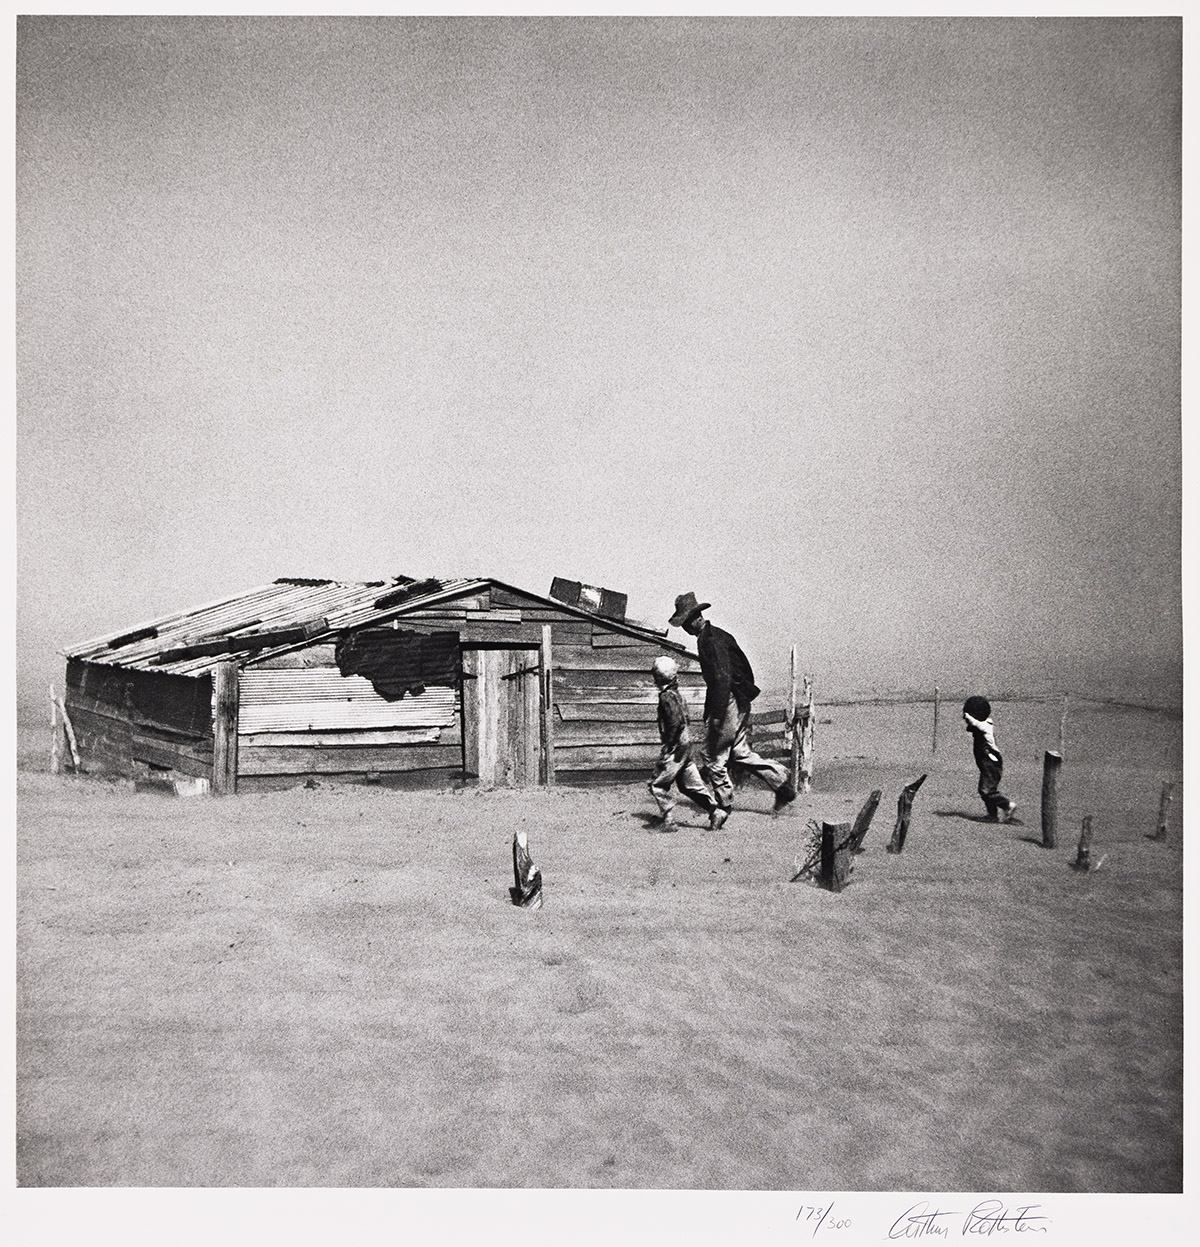 ARTHUR ROTHSTEIN (1915-1985) Dust Storm, Cimarron County, Oklahoma.